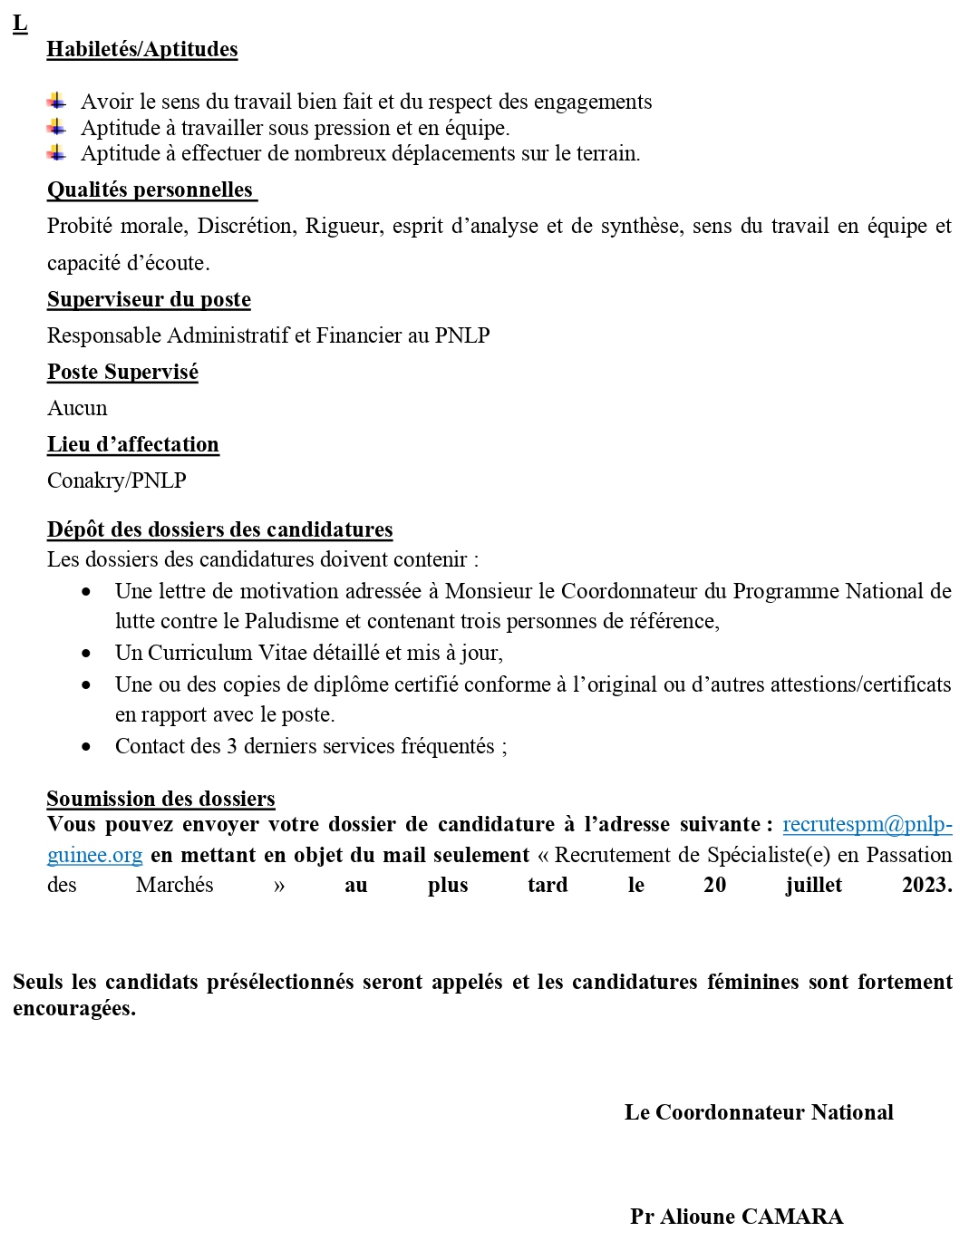 AVIS DE RECRUTEMENT D'UN(E) SPECIALISTE EN PASSATION DES MARCHES DU PNLP | Page 4